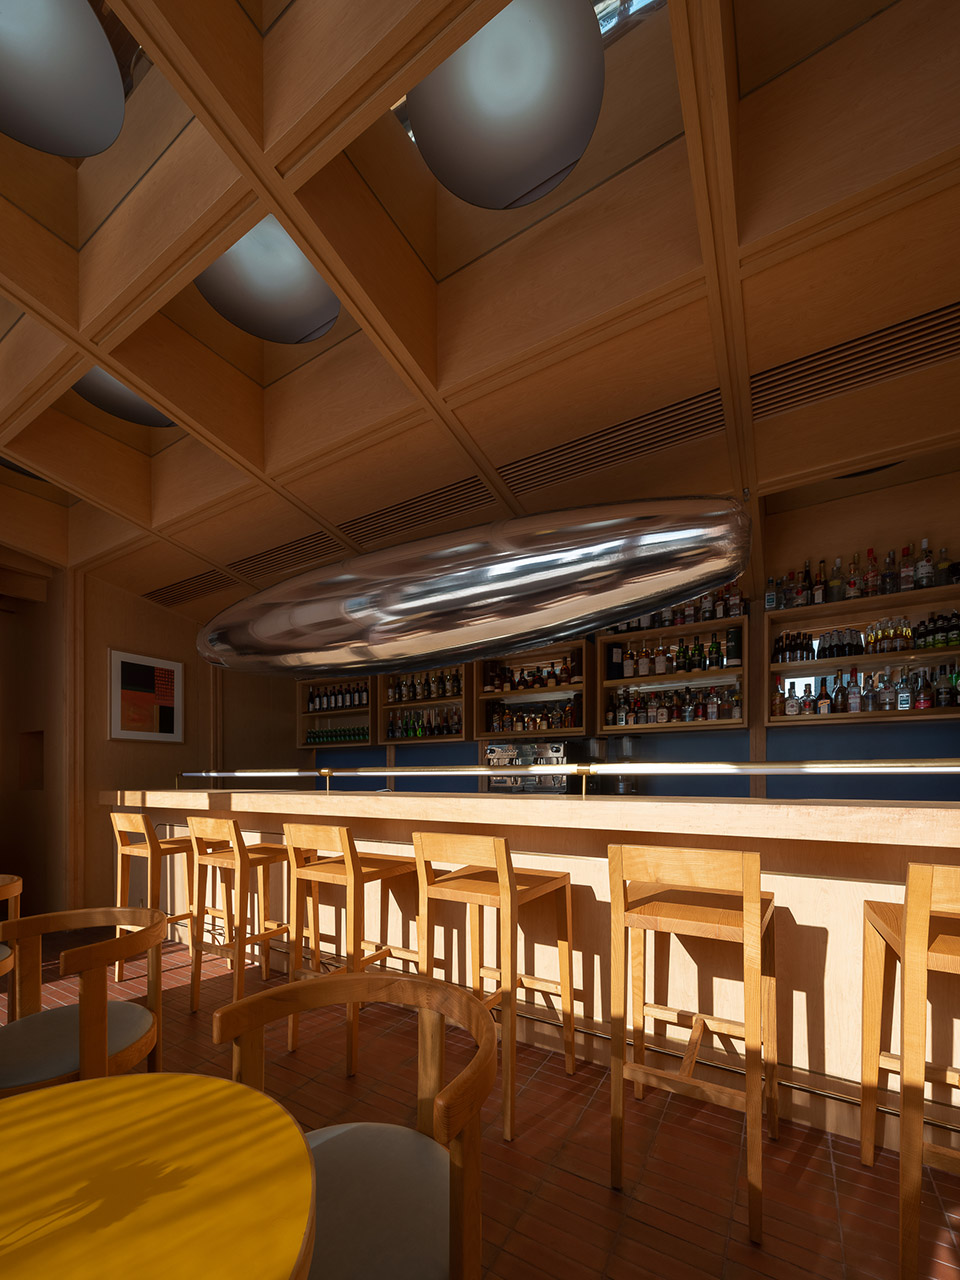 浮廊C2 Cafe &  Bar咖啡厅，深圳/专门为年轻人打造的“空中楼阁”-64